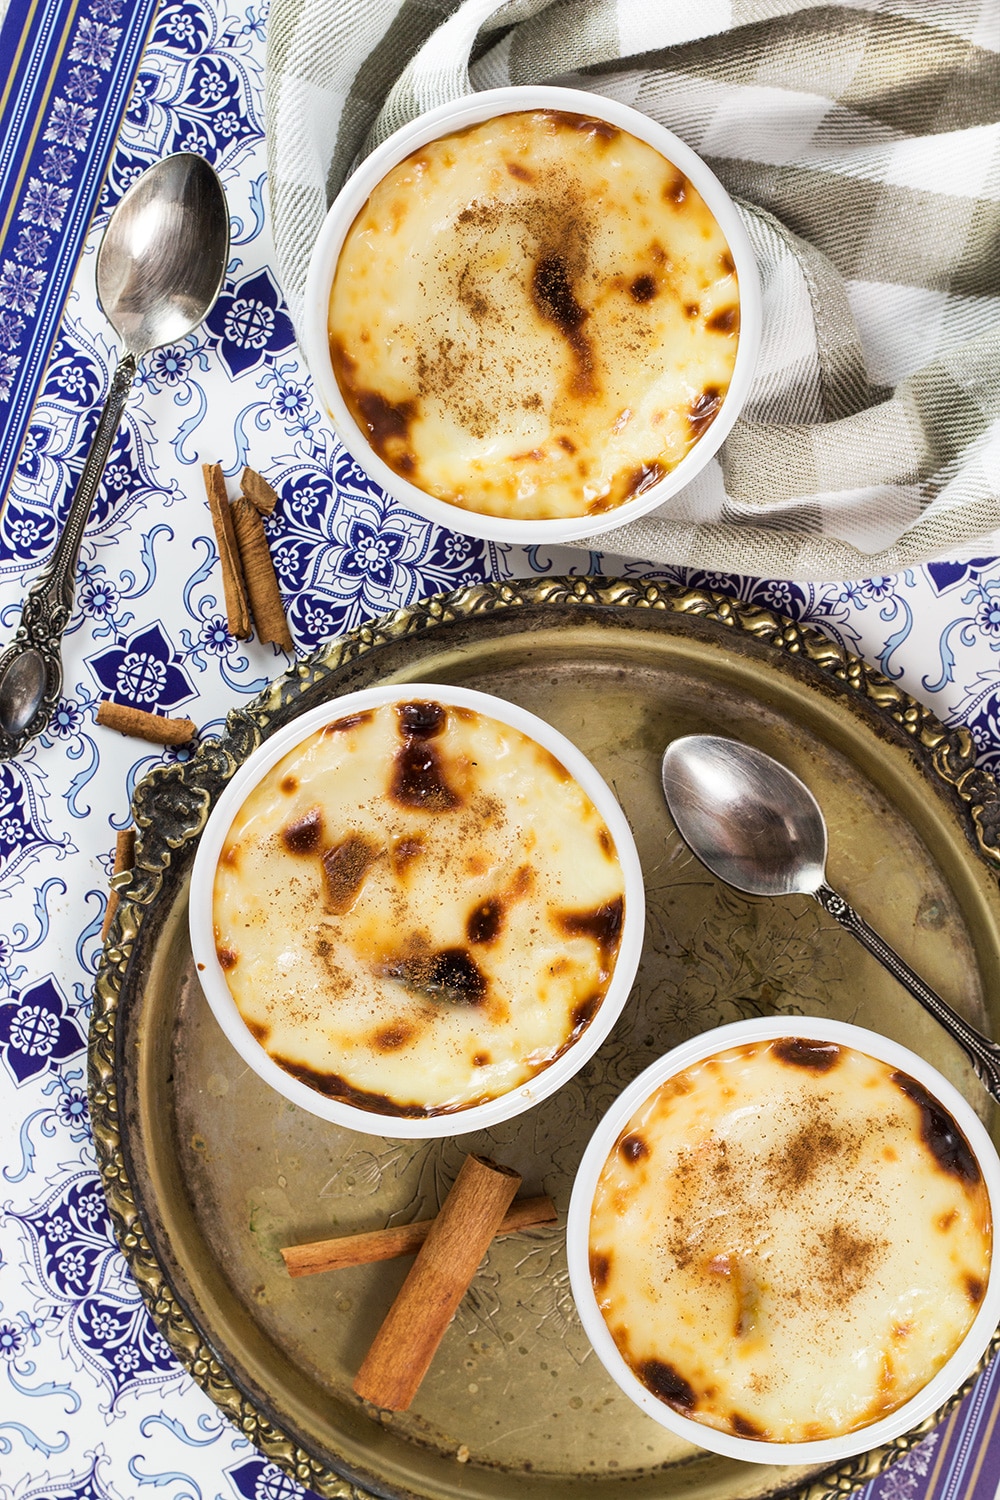 sütlaç – turkish rice pudding